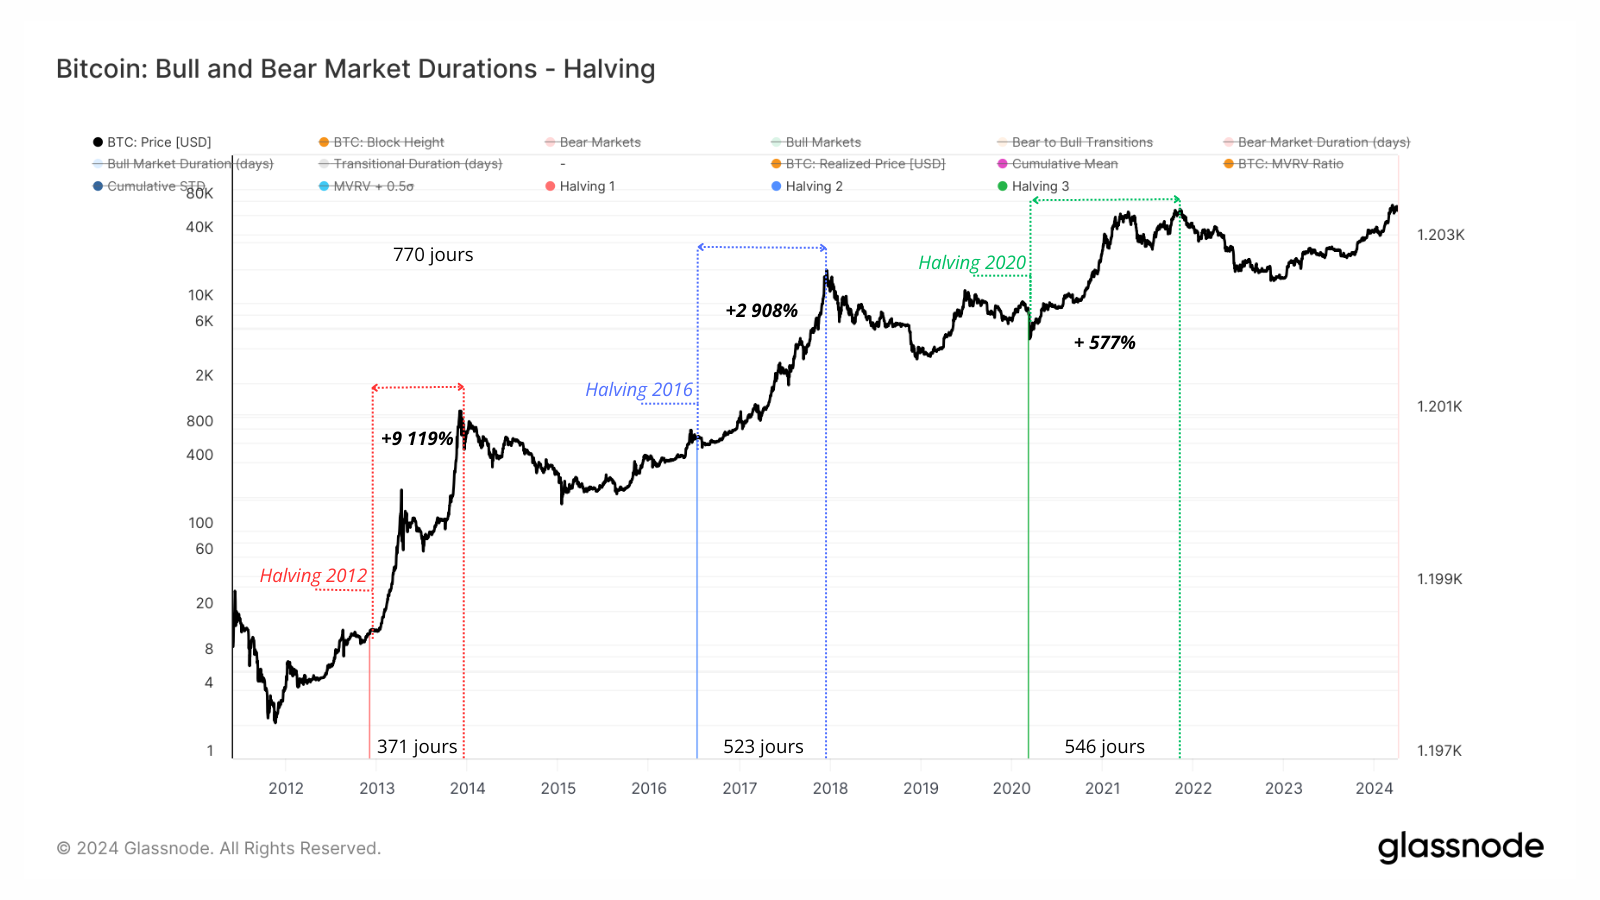 L'image représente la performance du Bitcoin, du halving jusqu'à l'ATH suivant.
Et si nous voyons que les performances diminuent au fil des cycles, cela nous donne un aperçu de la volatilité à la hausse qu'il pourrait se passer dans le futur.